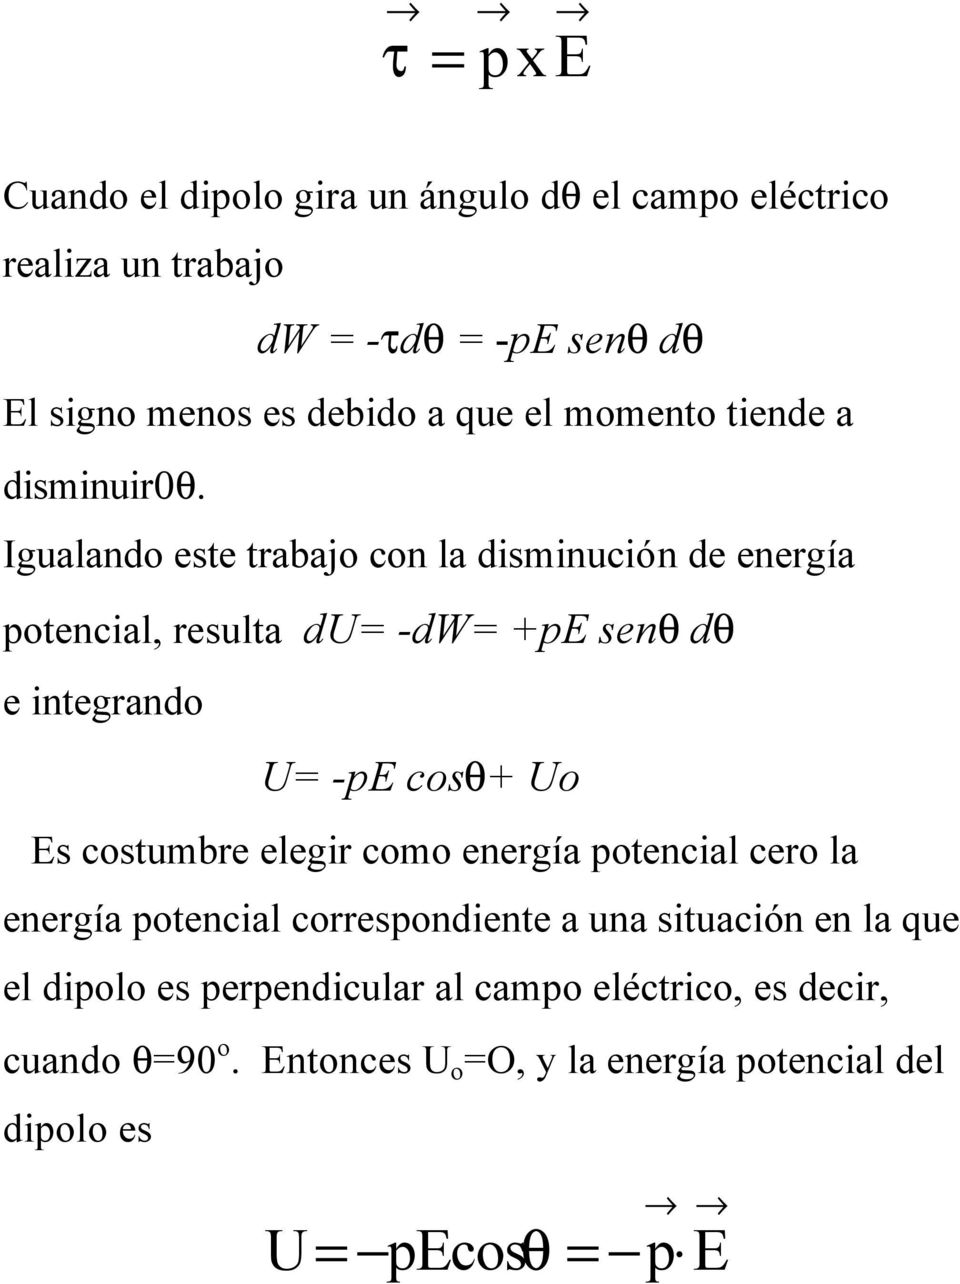 Igualando este trabajo con la disminución de energía potencial, resulta du= -dw= +pe senθ dθ e integrando U= -pe cosθ+ Uo Es costumbre